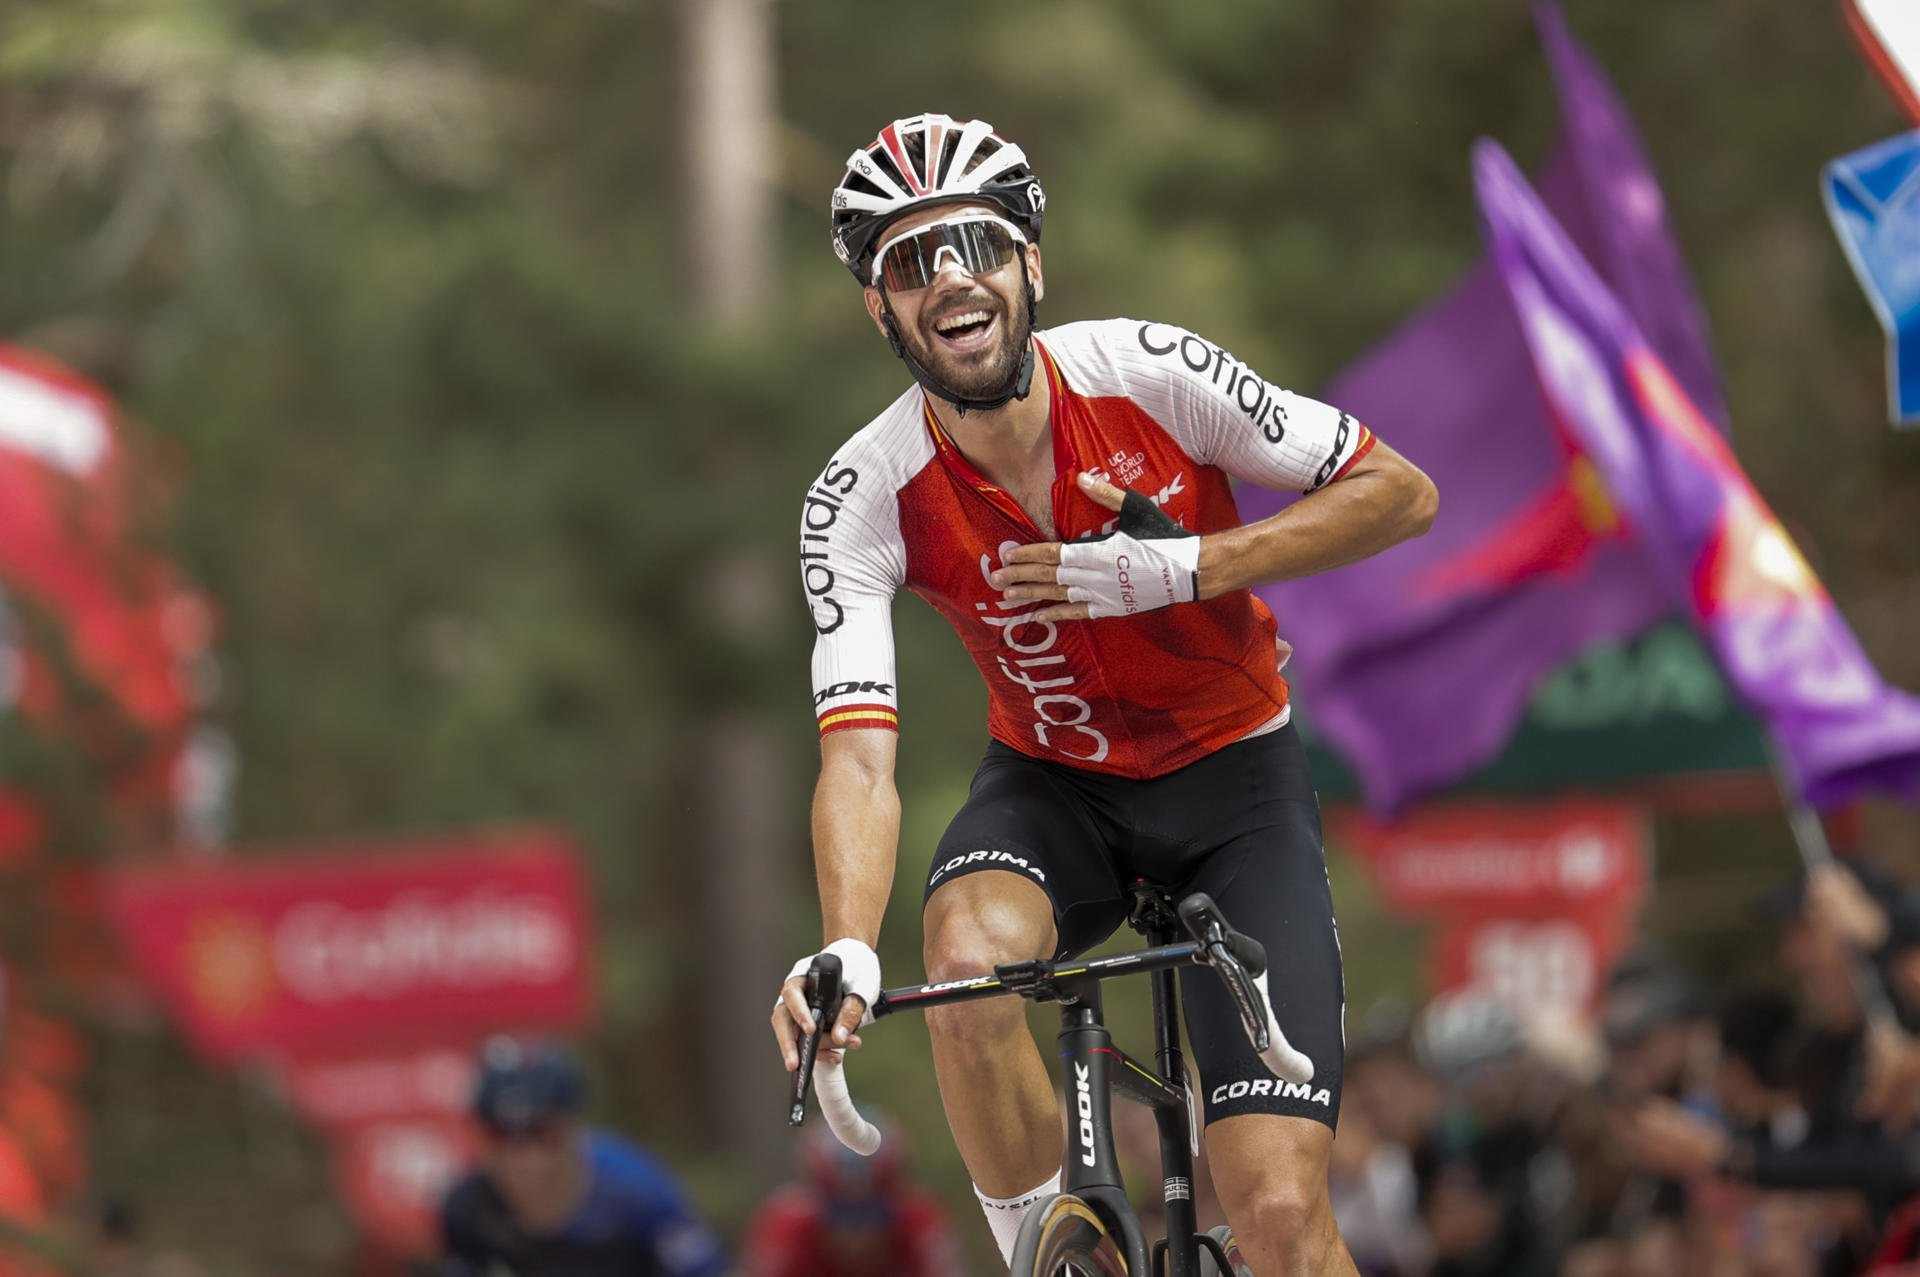 Jesús Herrada guanya a la Laguna Negra i els favorits no forcen a la Vuelta a Espanya